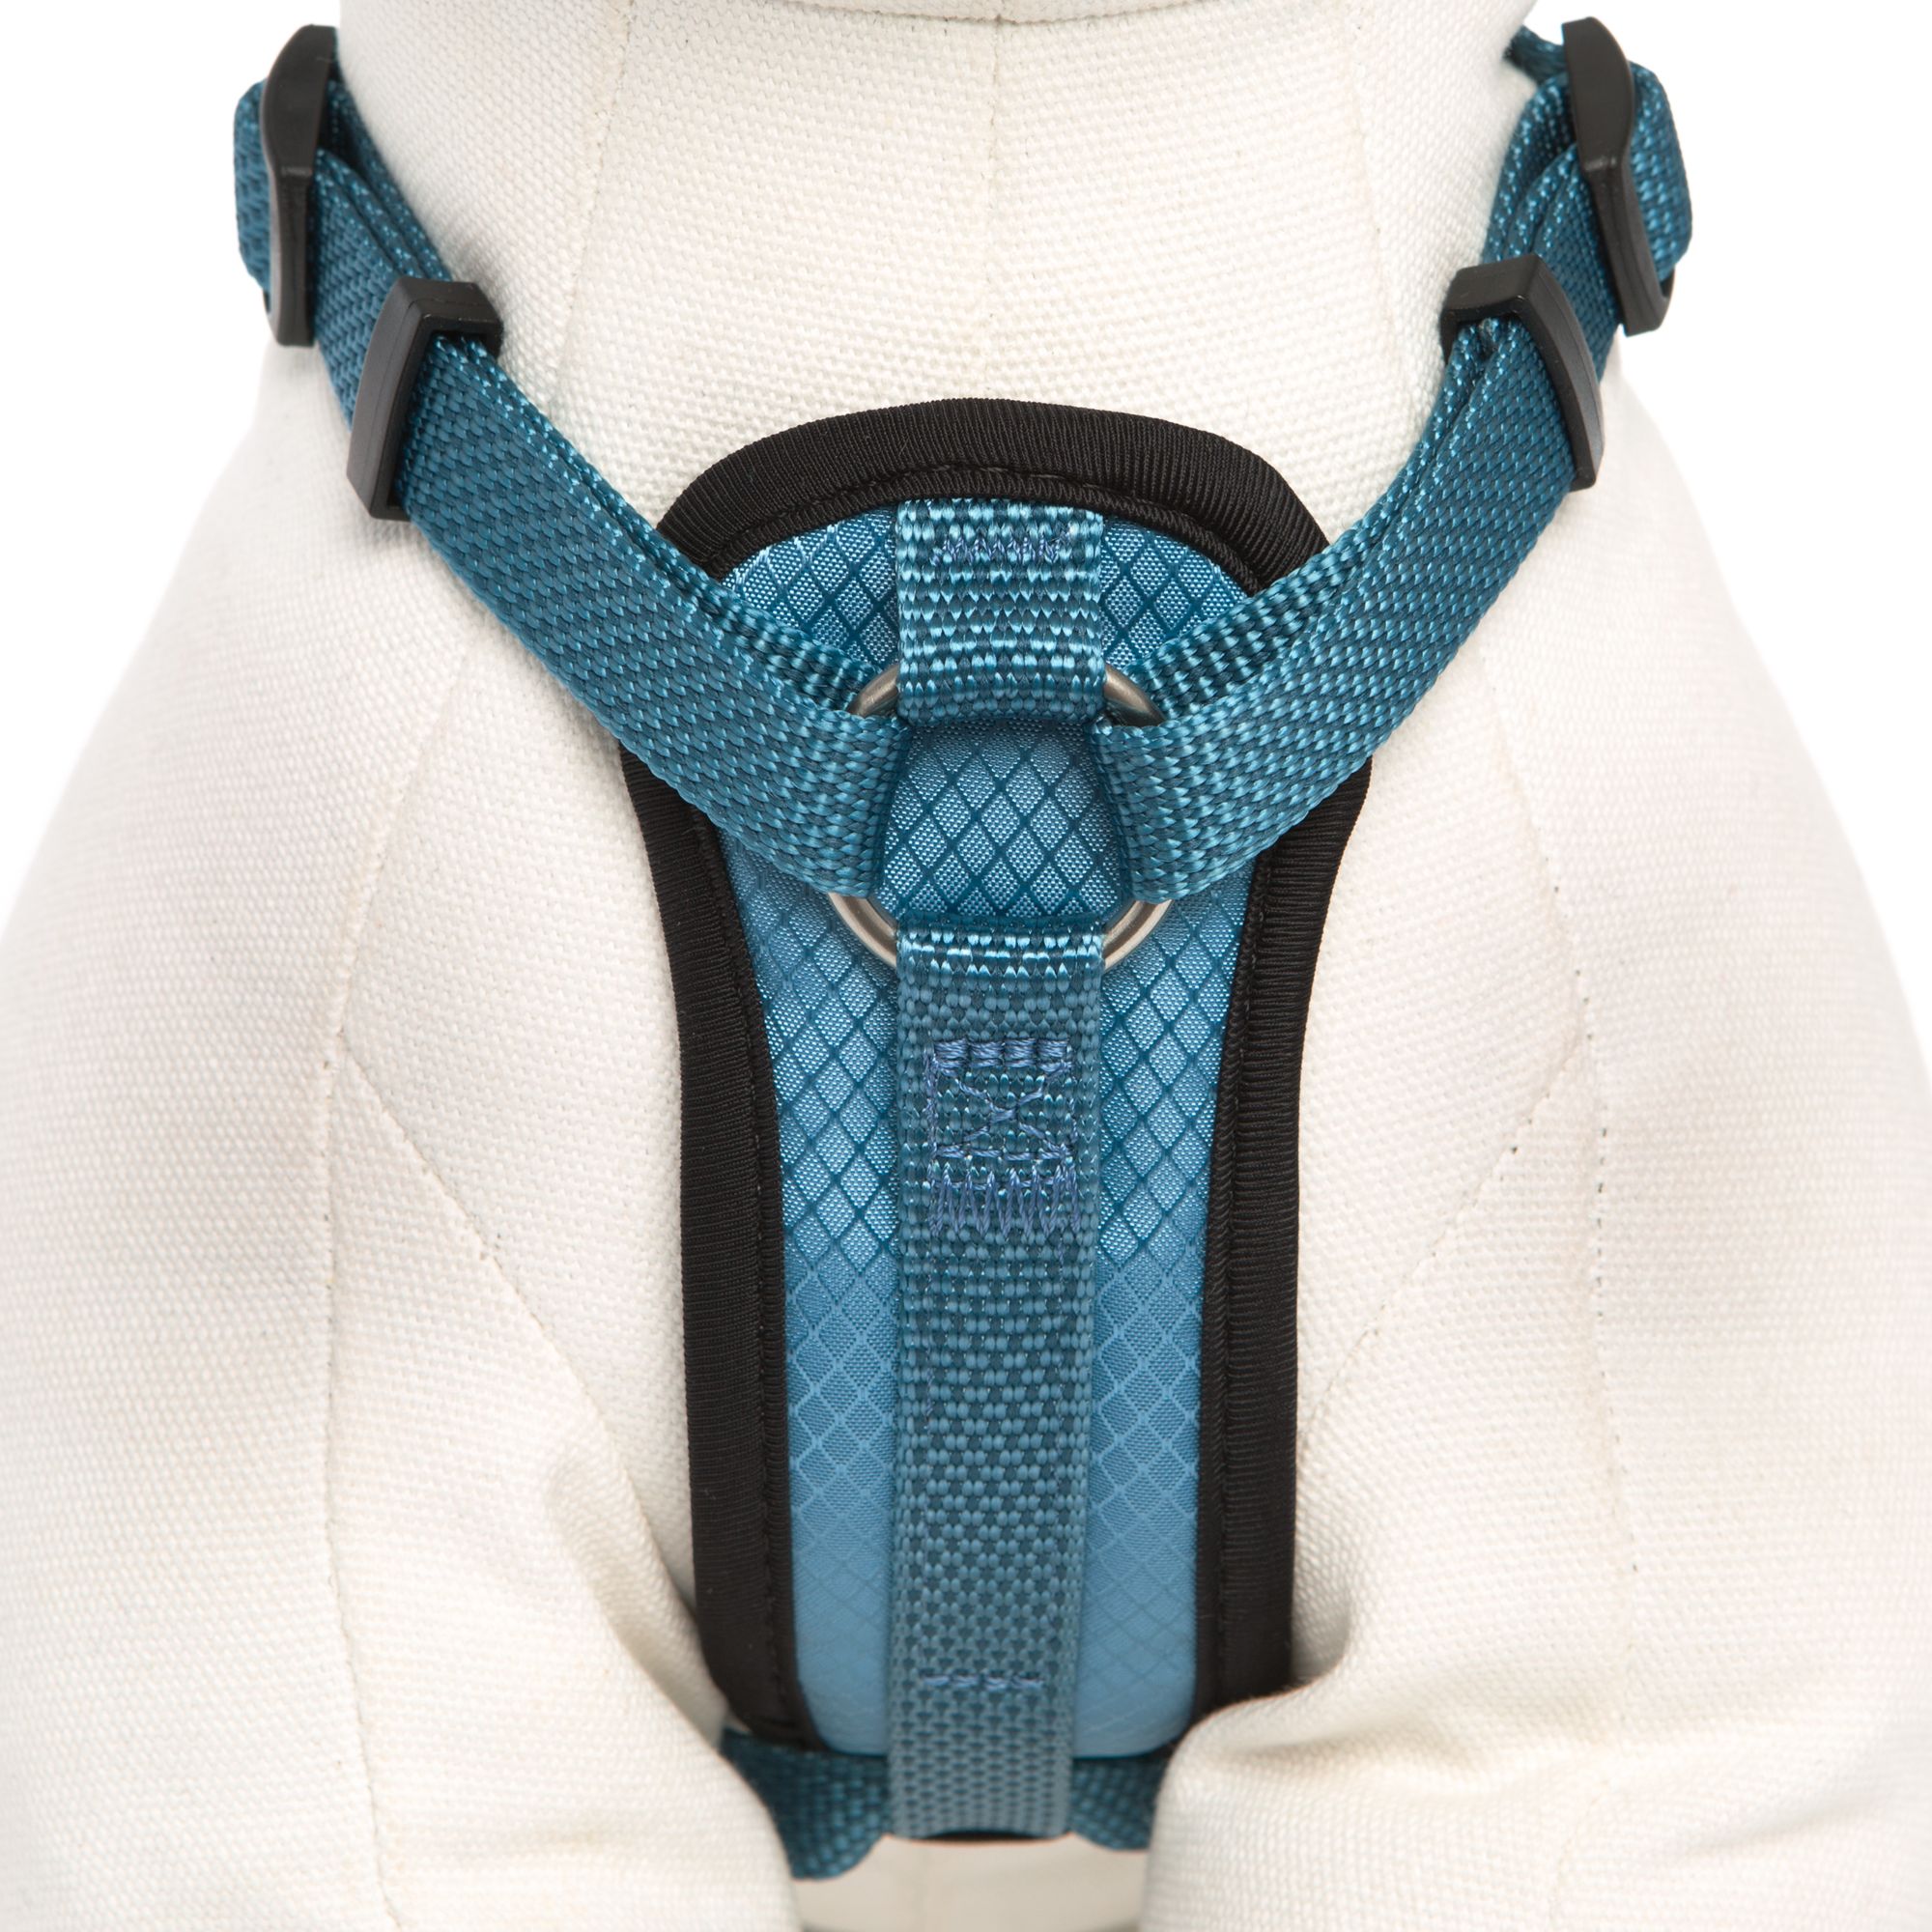 kong comfort harness